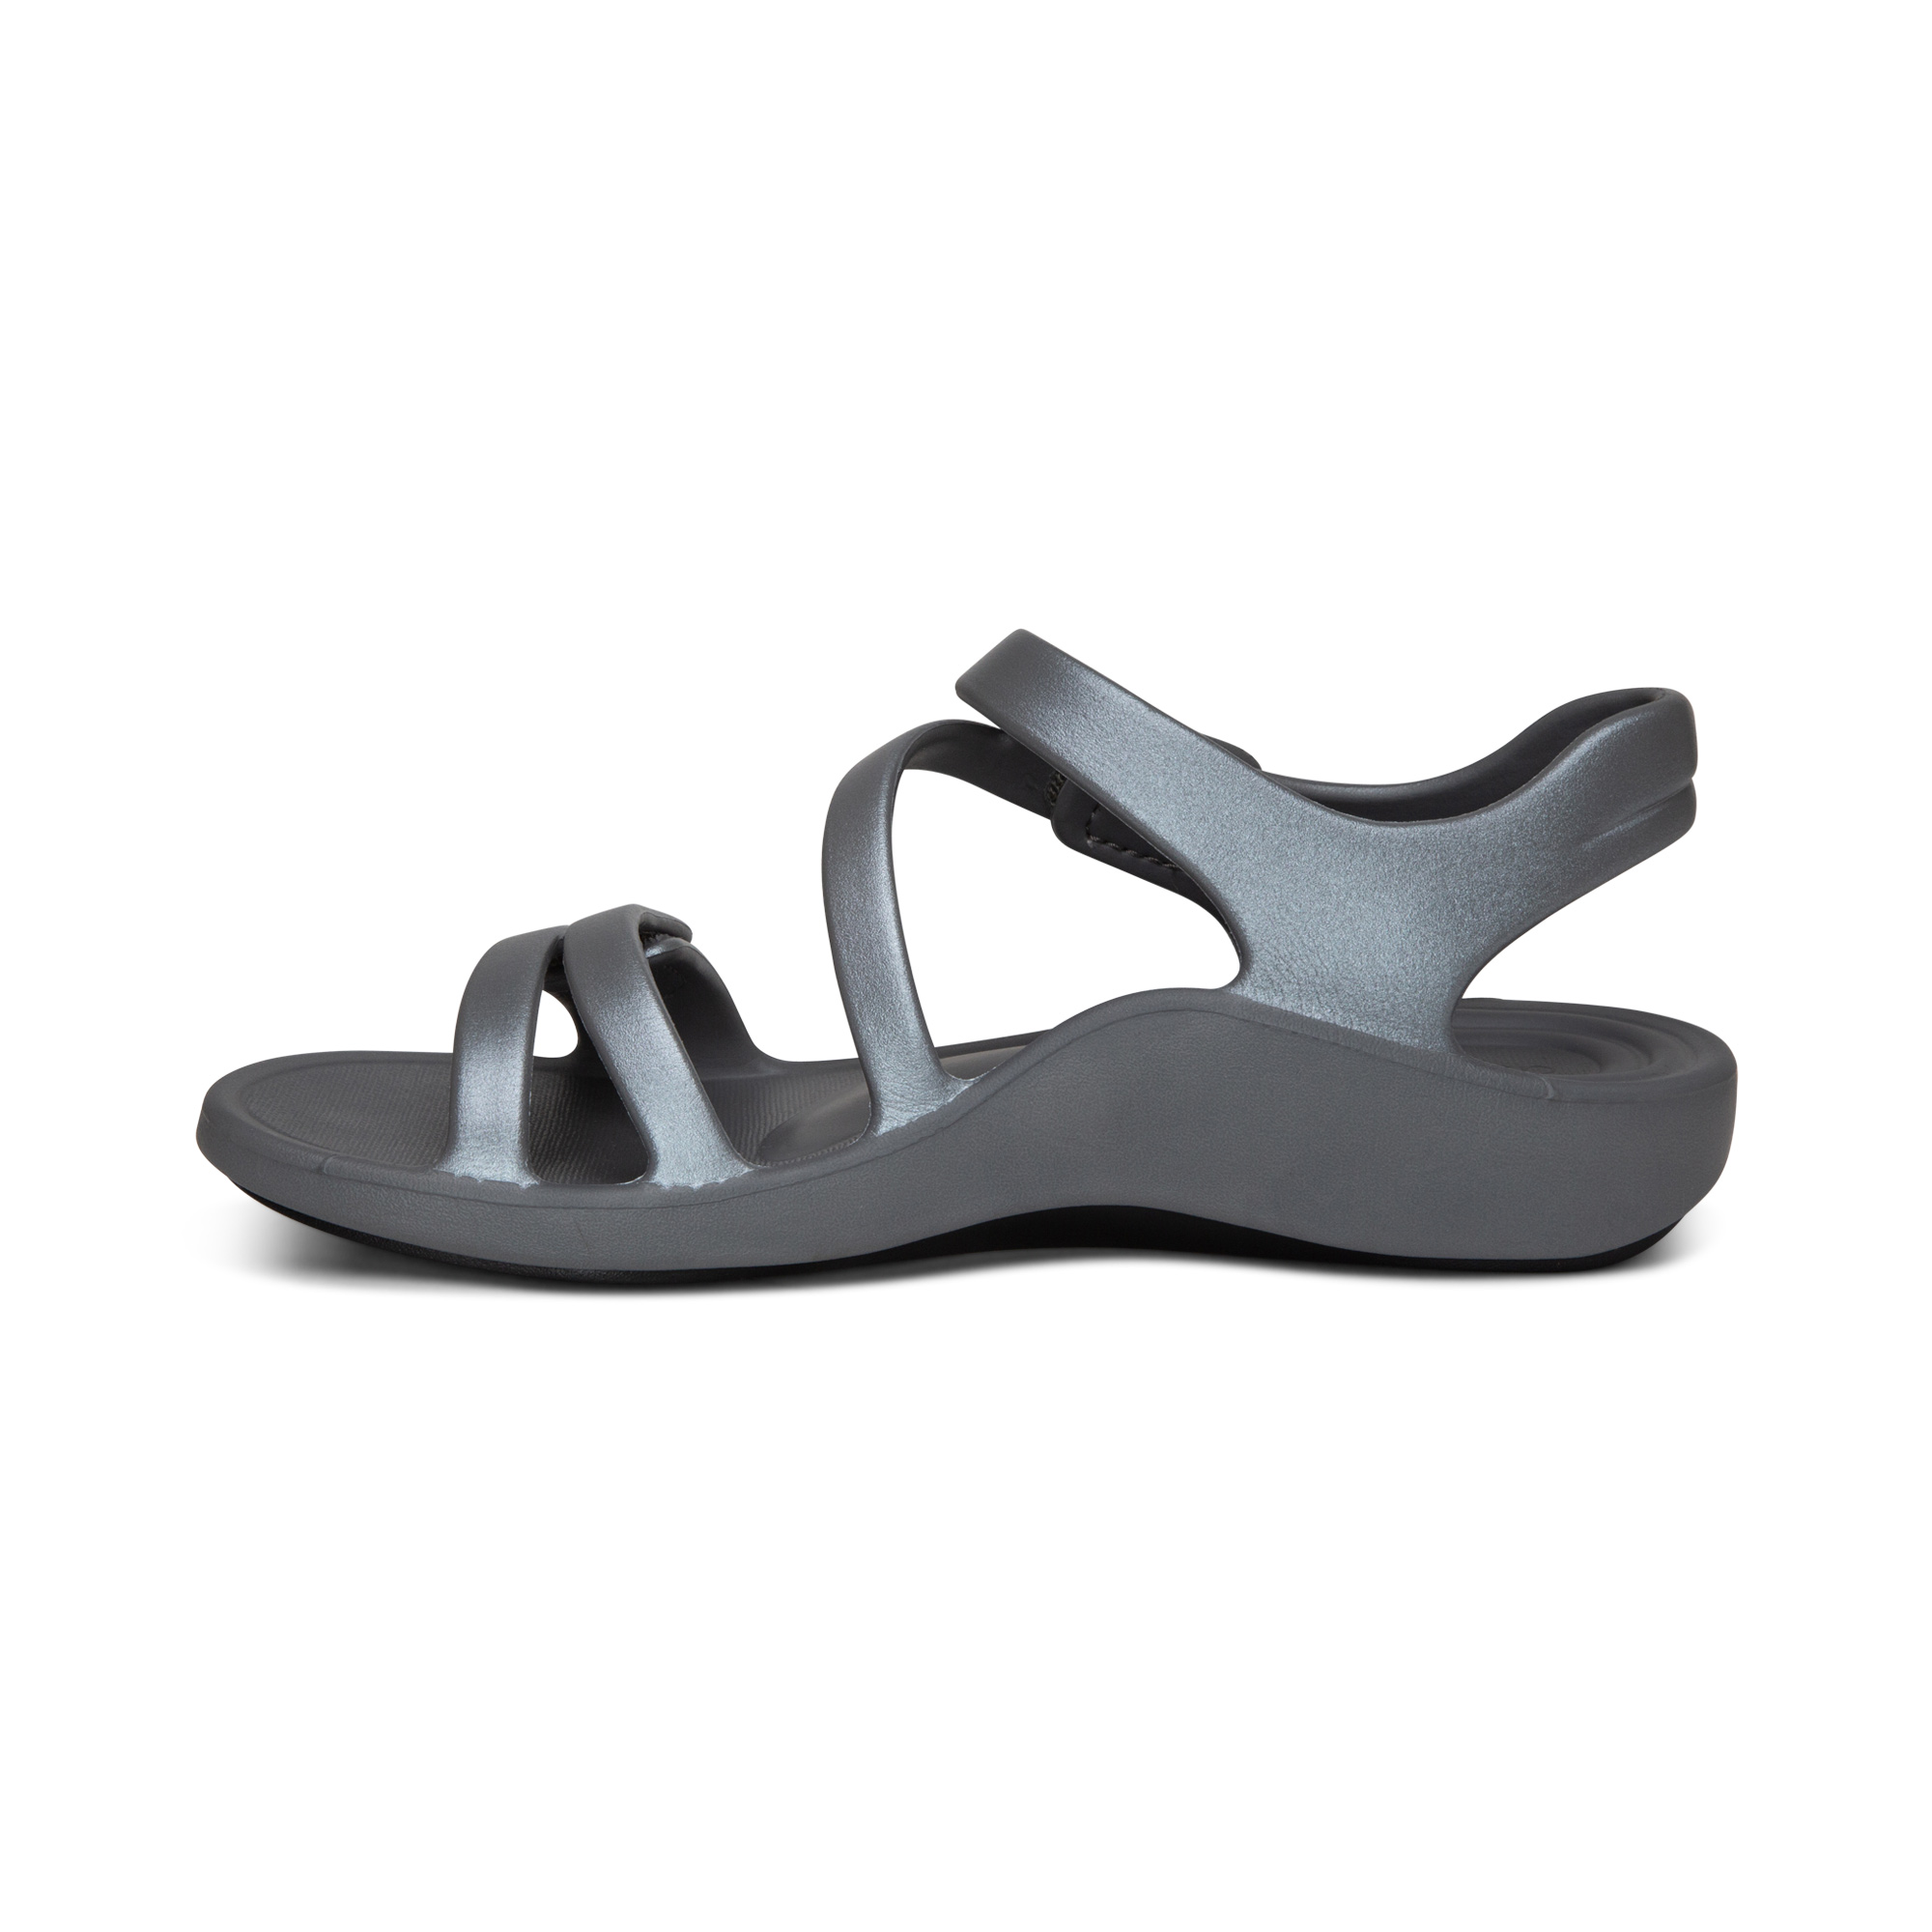 Sandal sức khoẻ nữ Aetrex Jillian Sport Grey- Sandal mềm nhẹ, không thấm nước